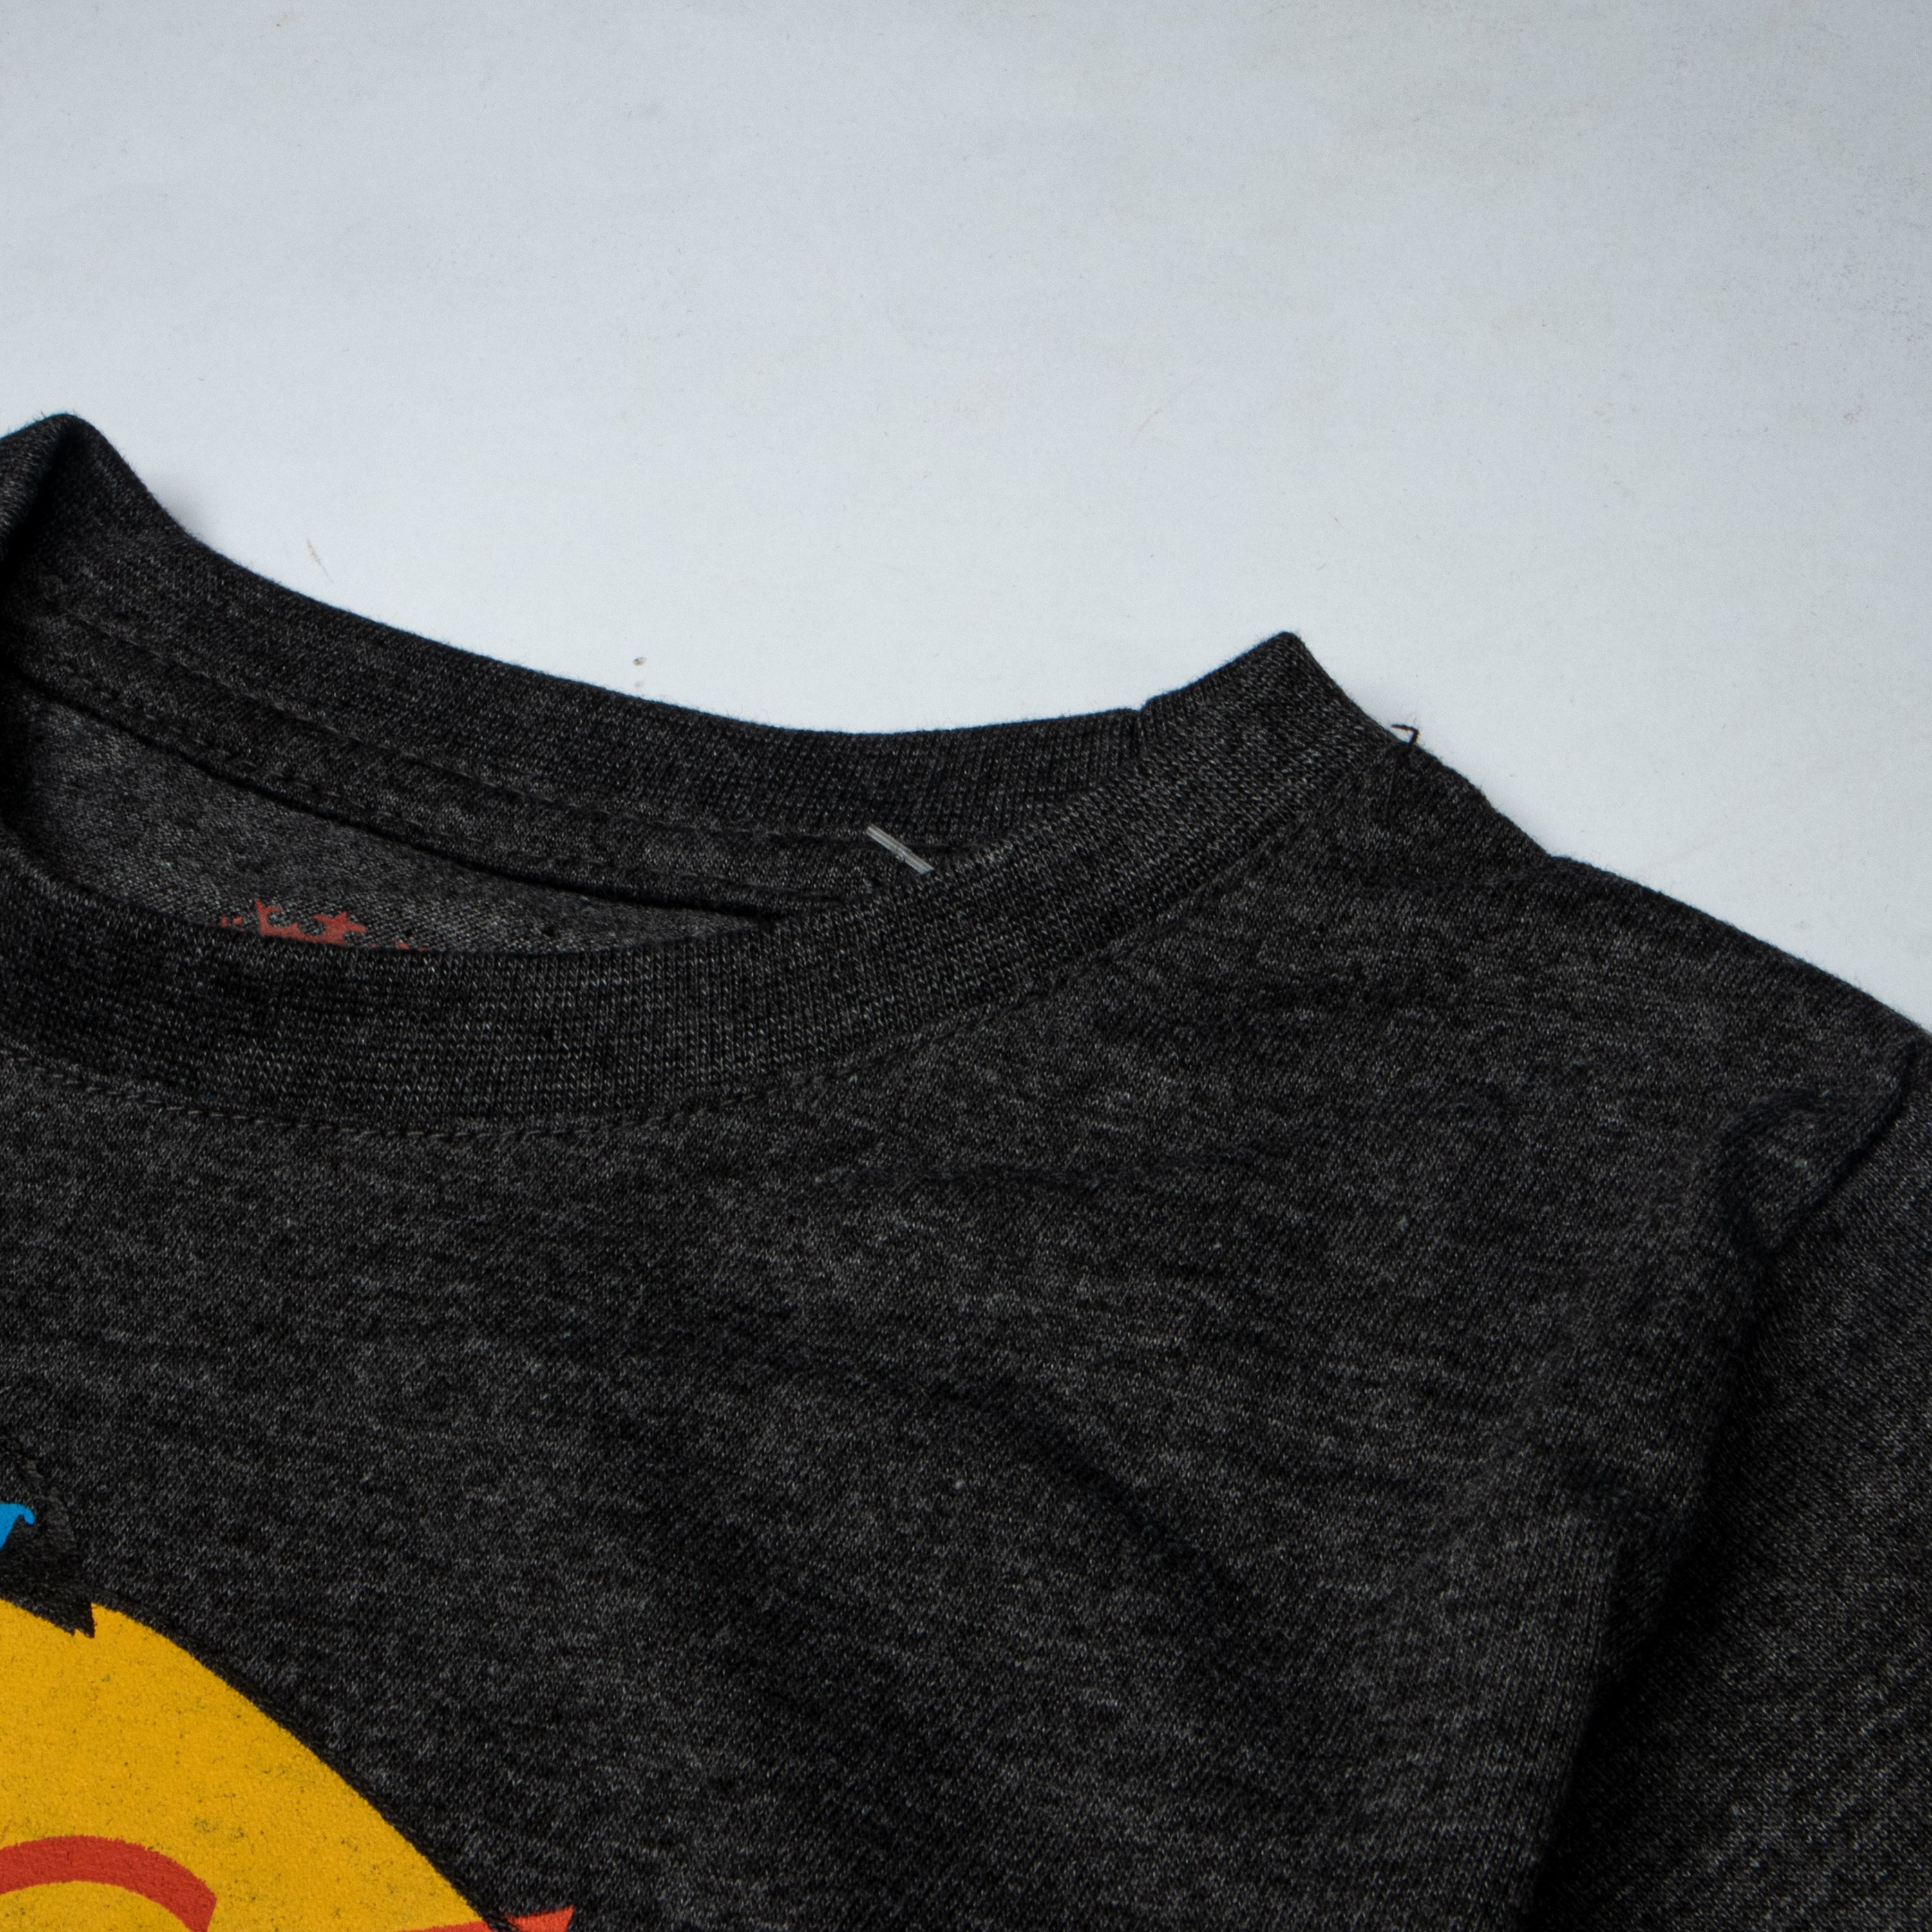 Boys Half Sleeves-Printed T-Shirt Charcoal (Angry-Bird)